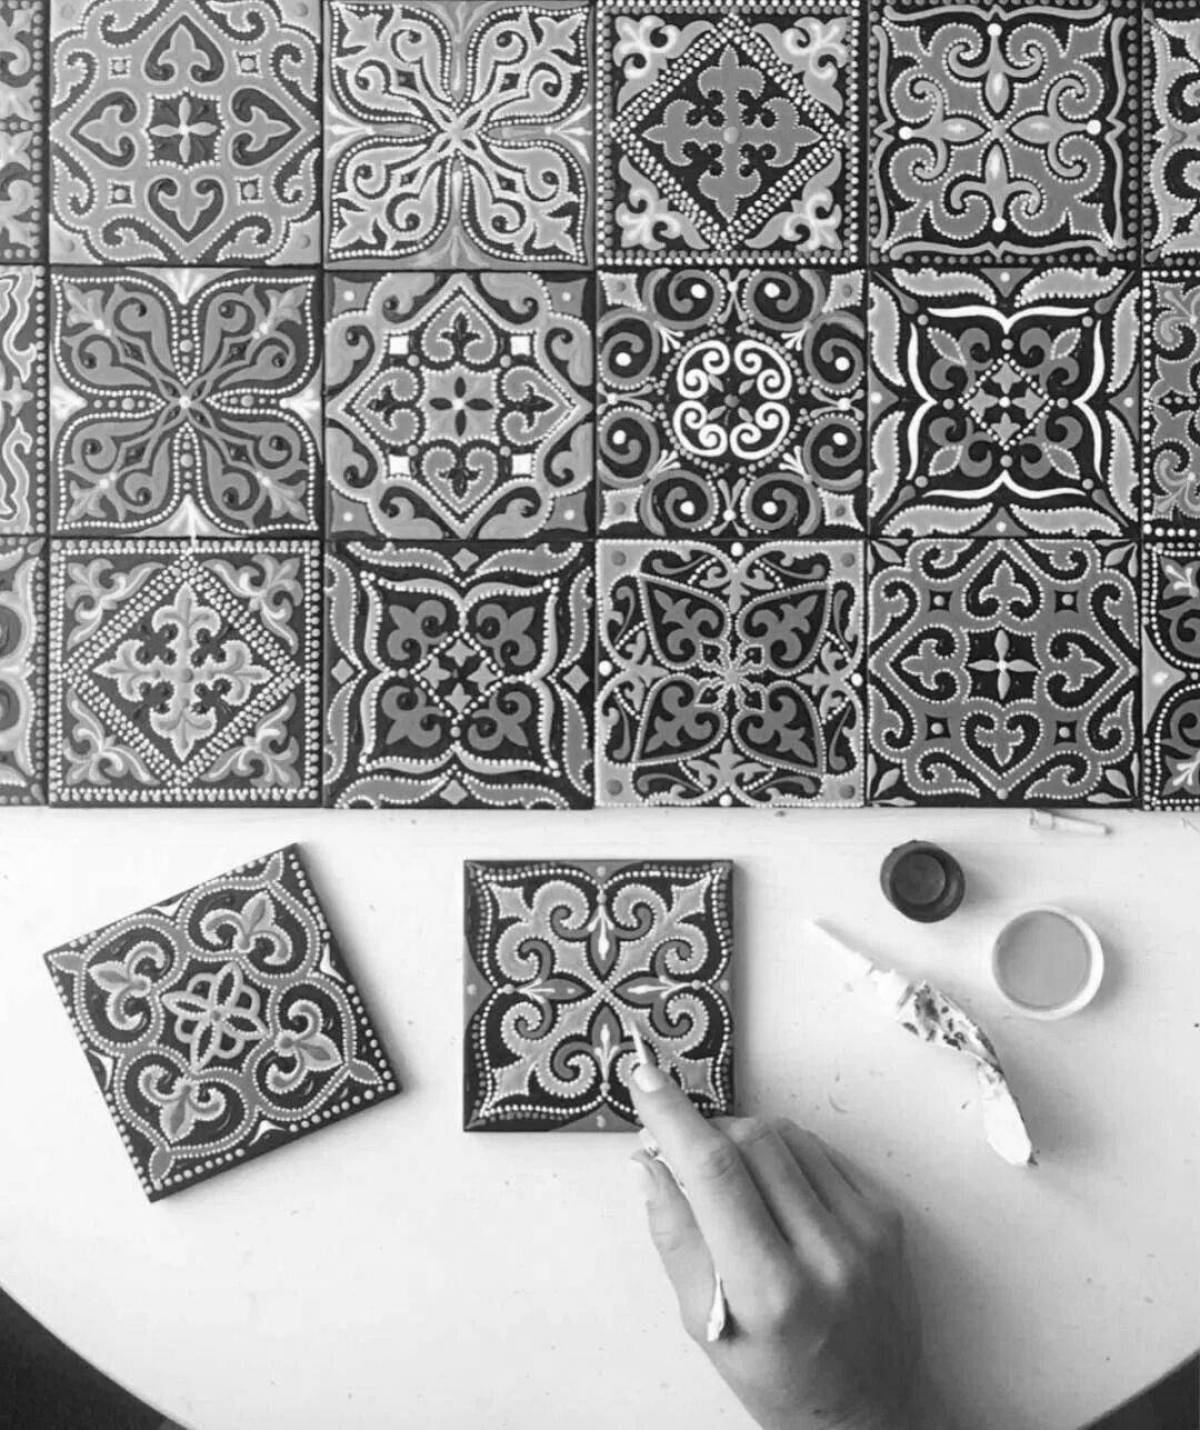 Detailed handmade ceramic tiles